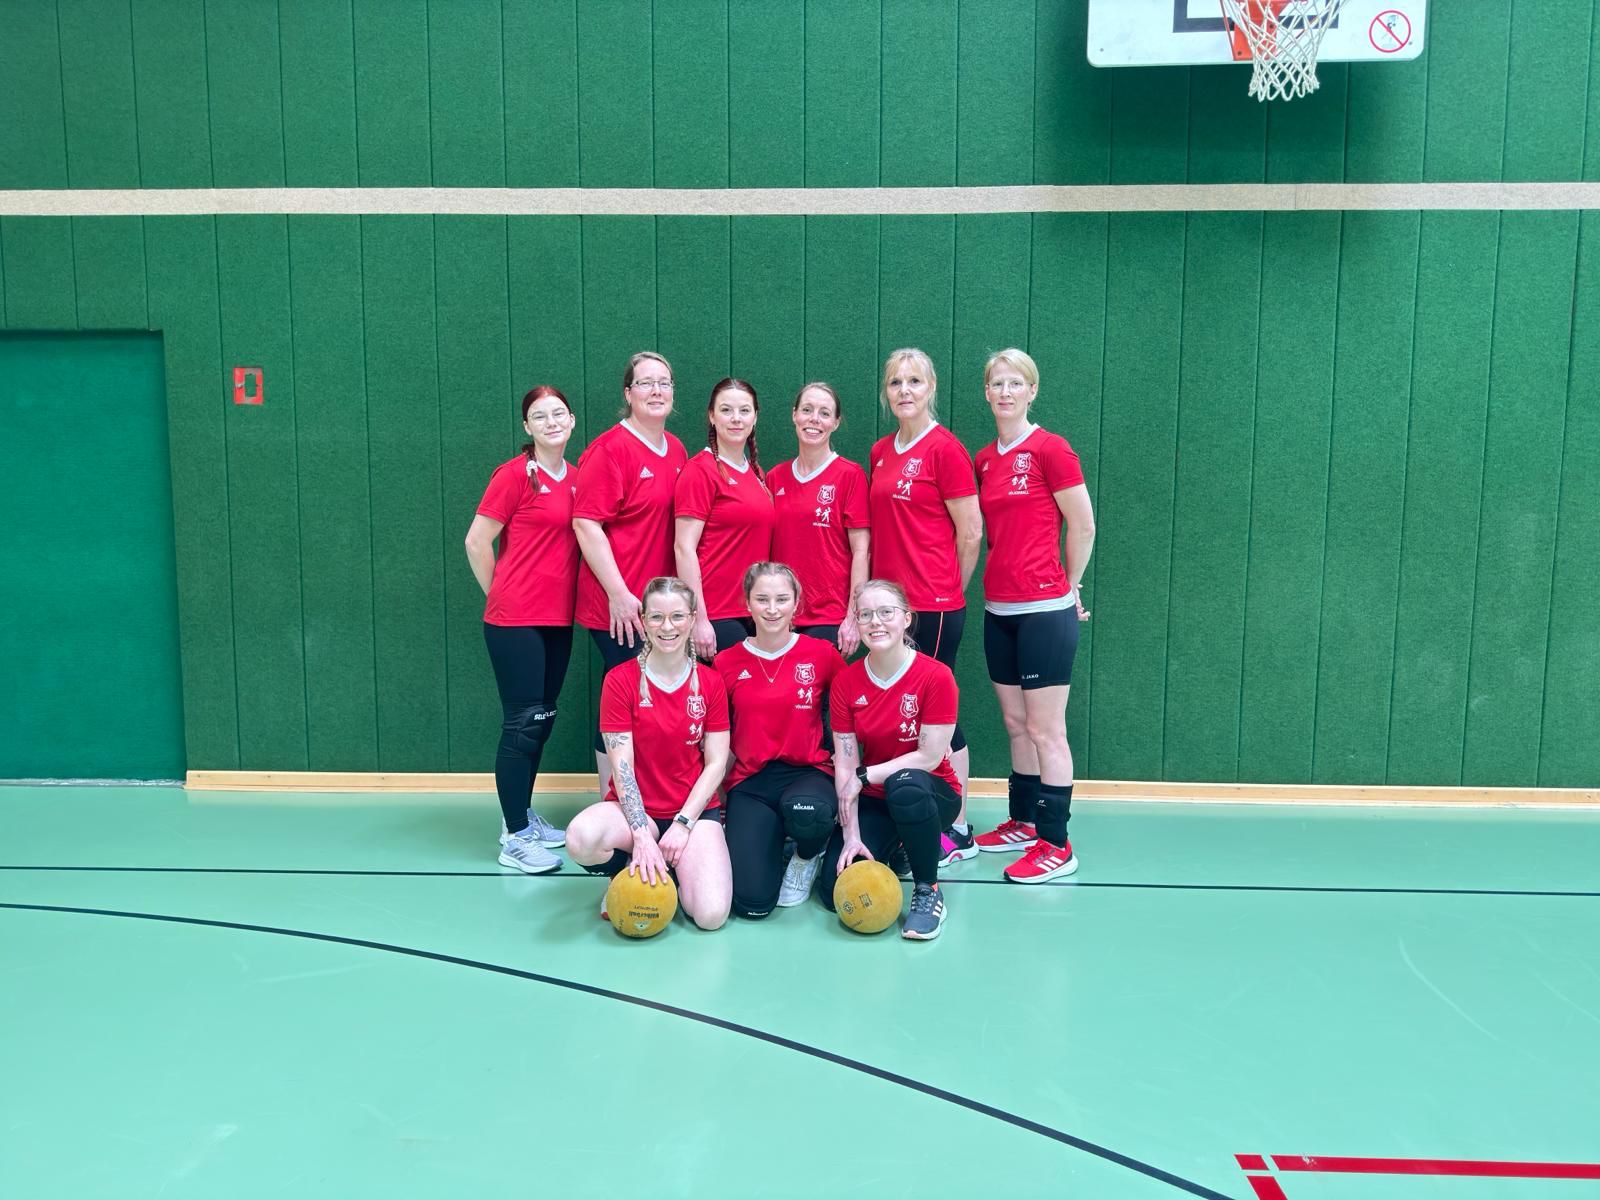 Unsere Völkerball Damen des TuS Rot-Weiß holten sich am vergangenen Sonntag, am 3. Staffel Spieltag in Hinte.